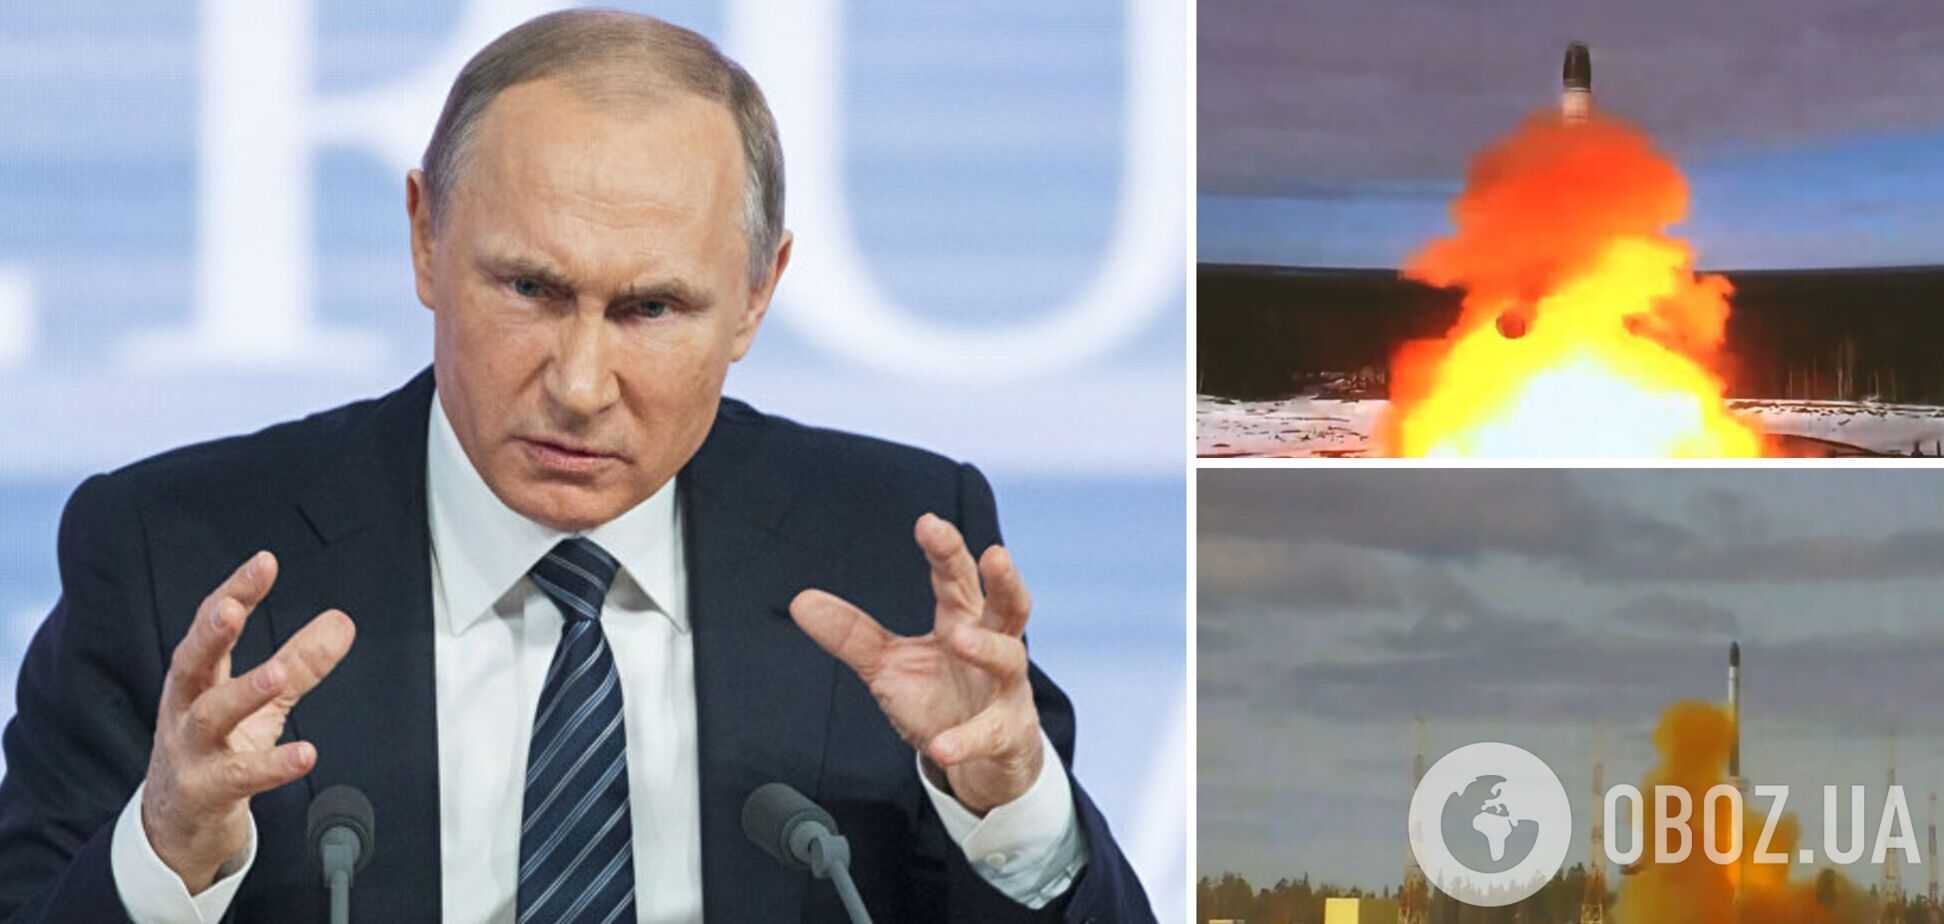 Россия испытала новое ядерное оружие: на Западе не увидели реальной угрозы – The Daily Mail